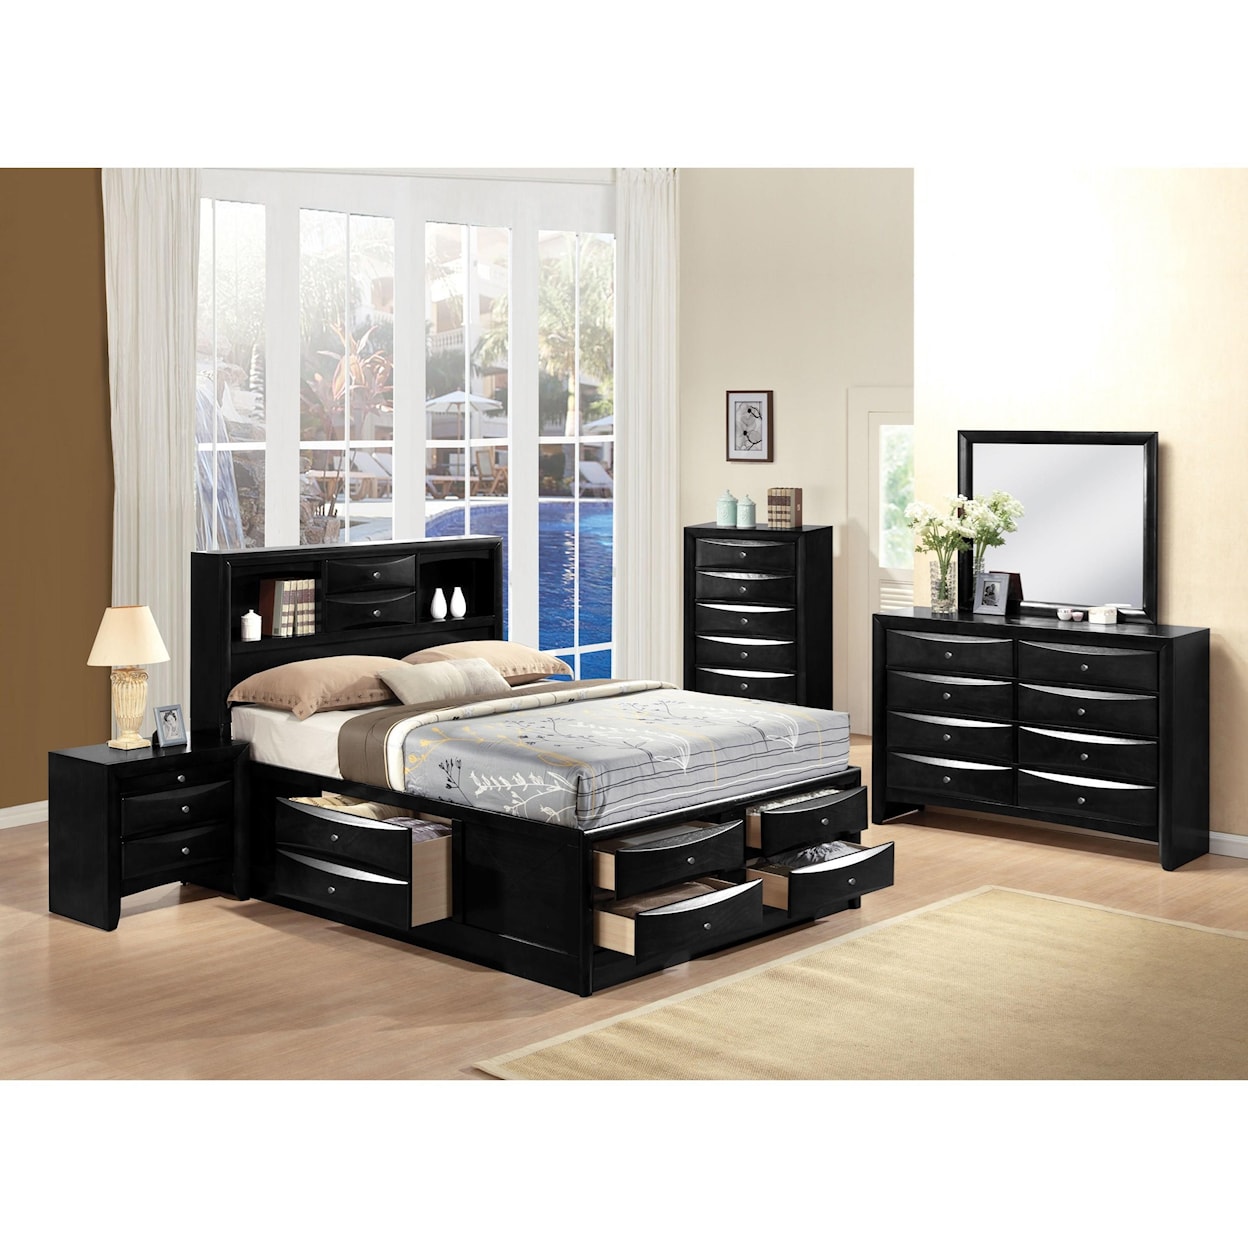 Acme Furniture Ireland Storage - Black Queen Bed w/Storage